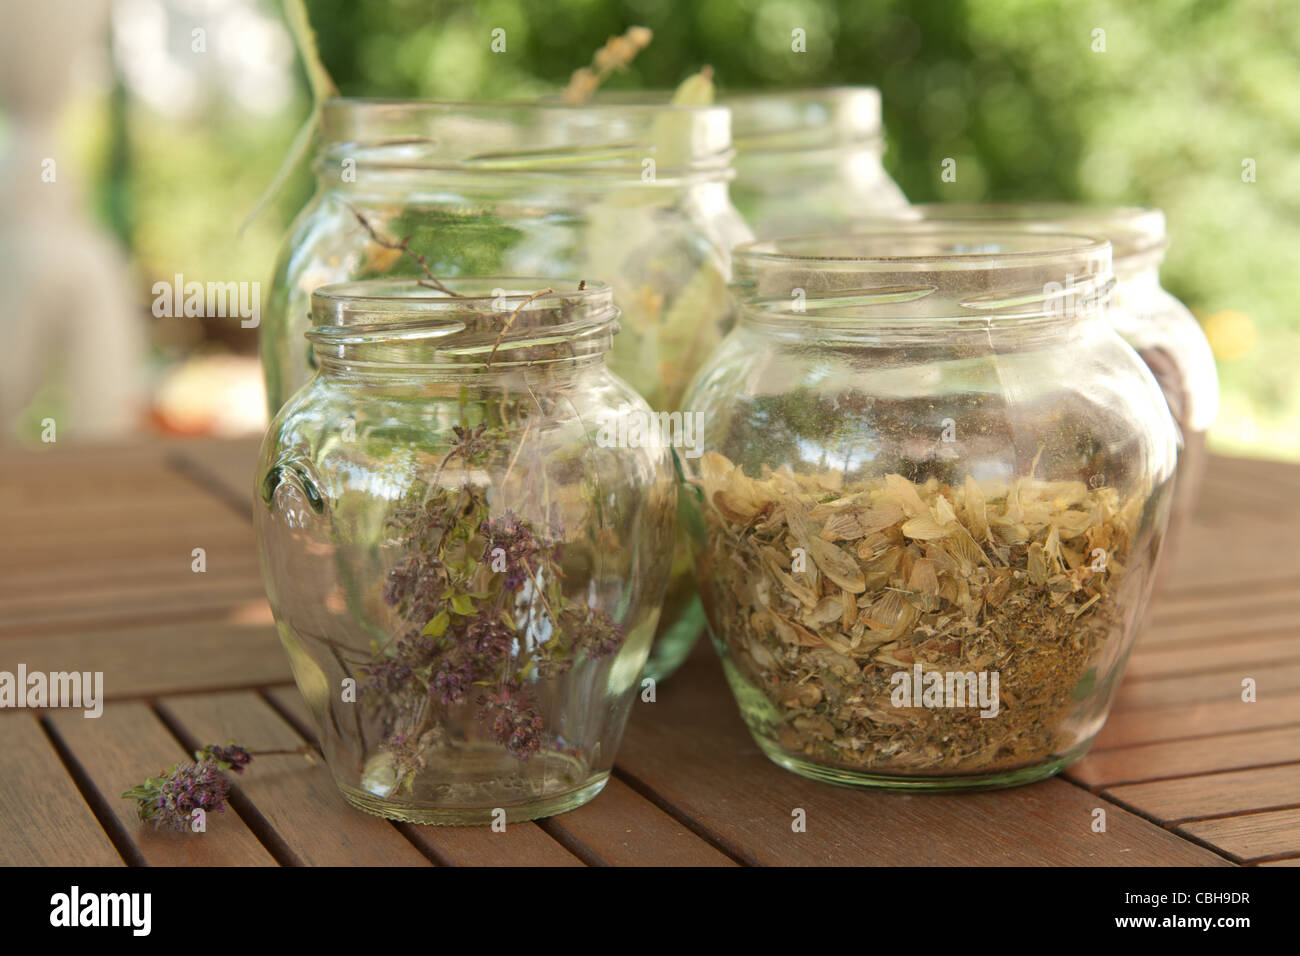 Le erbe essiccate in vasi sul tavolo Foto Stock